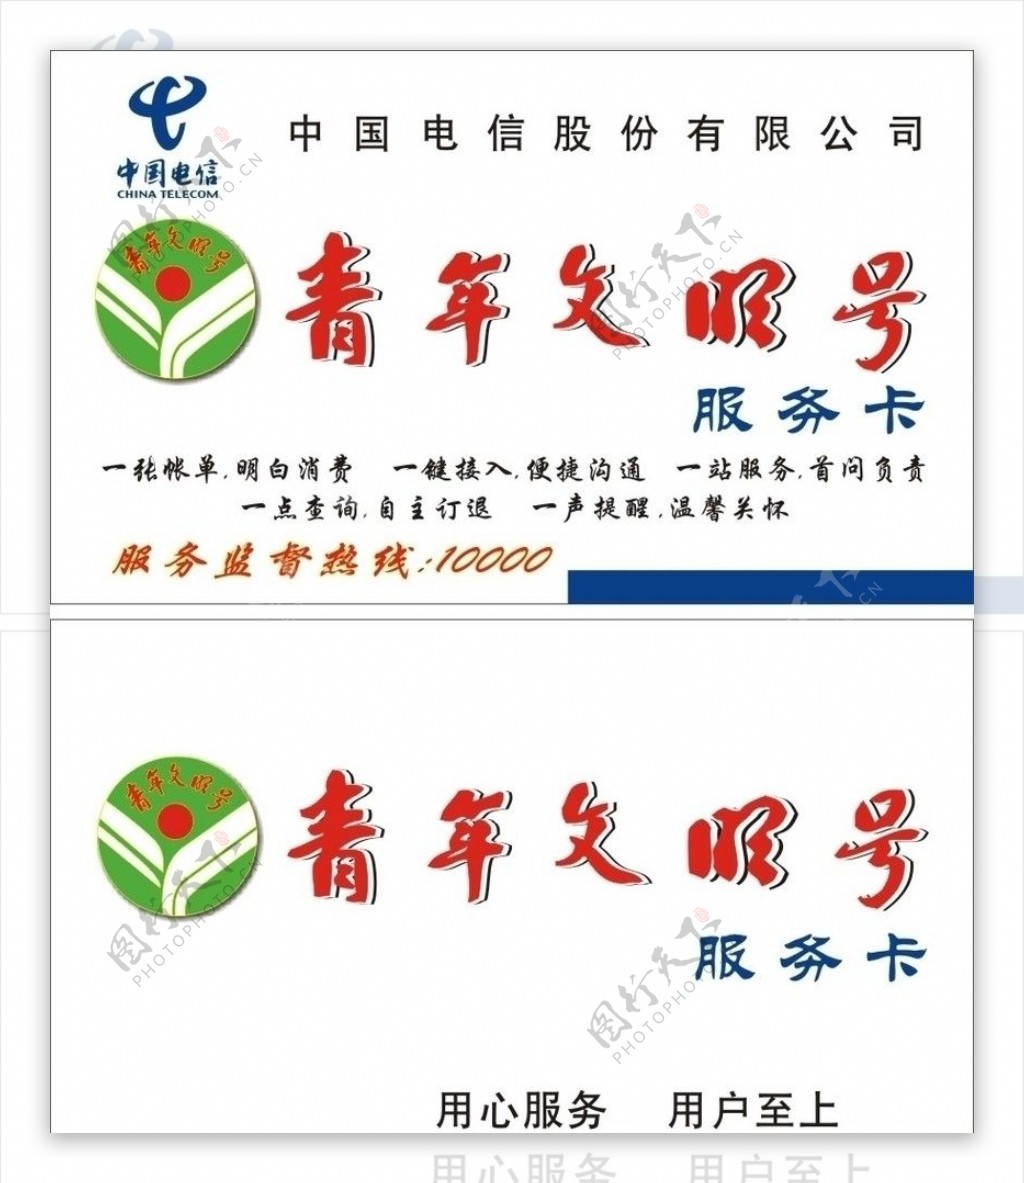 青年文明号服务卡中国电信图片